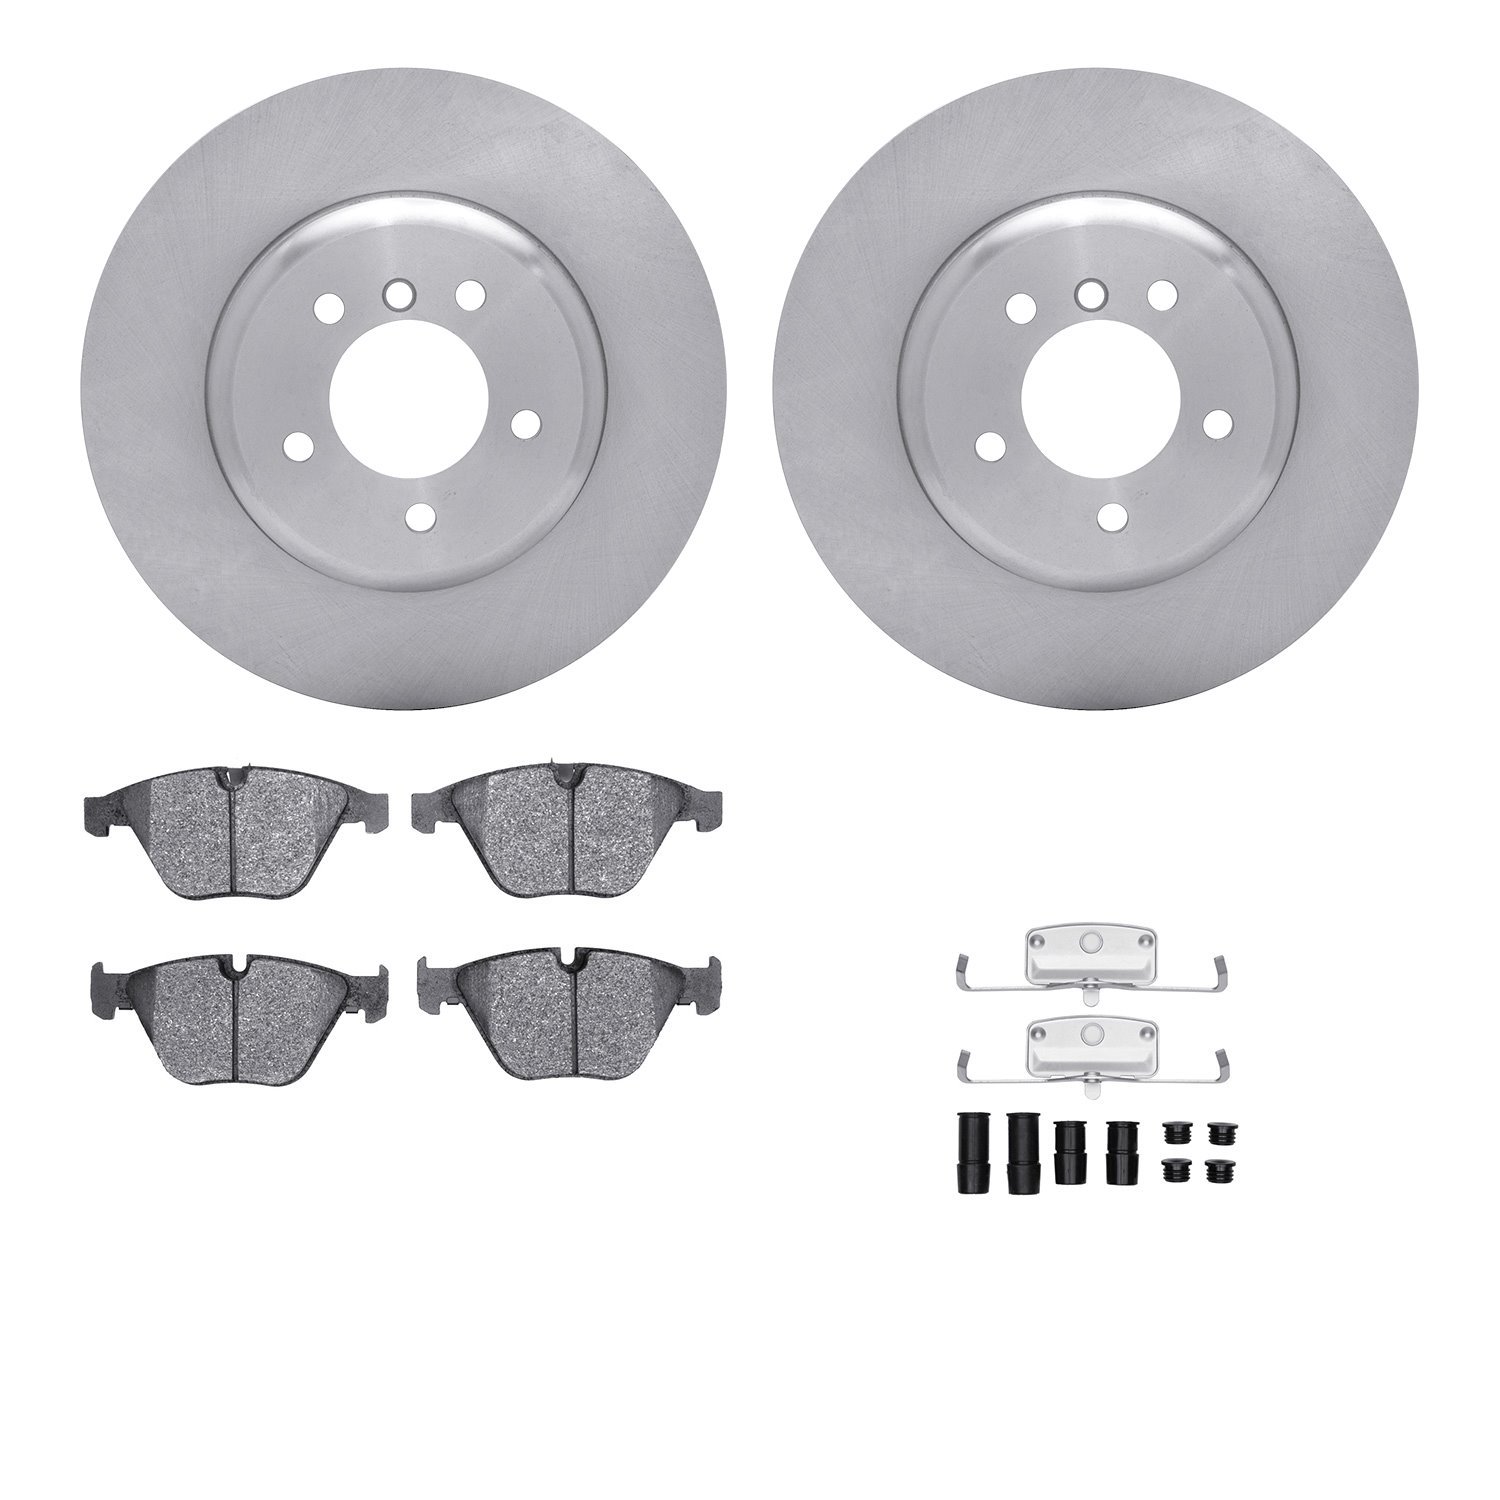 6612-31364 Brake Rotors w/5000 Euro Ceramic Brake Pads Kit with Hardware, 2011-2016 BMW, Position: Front